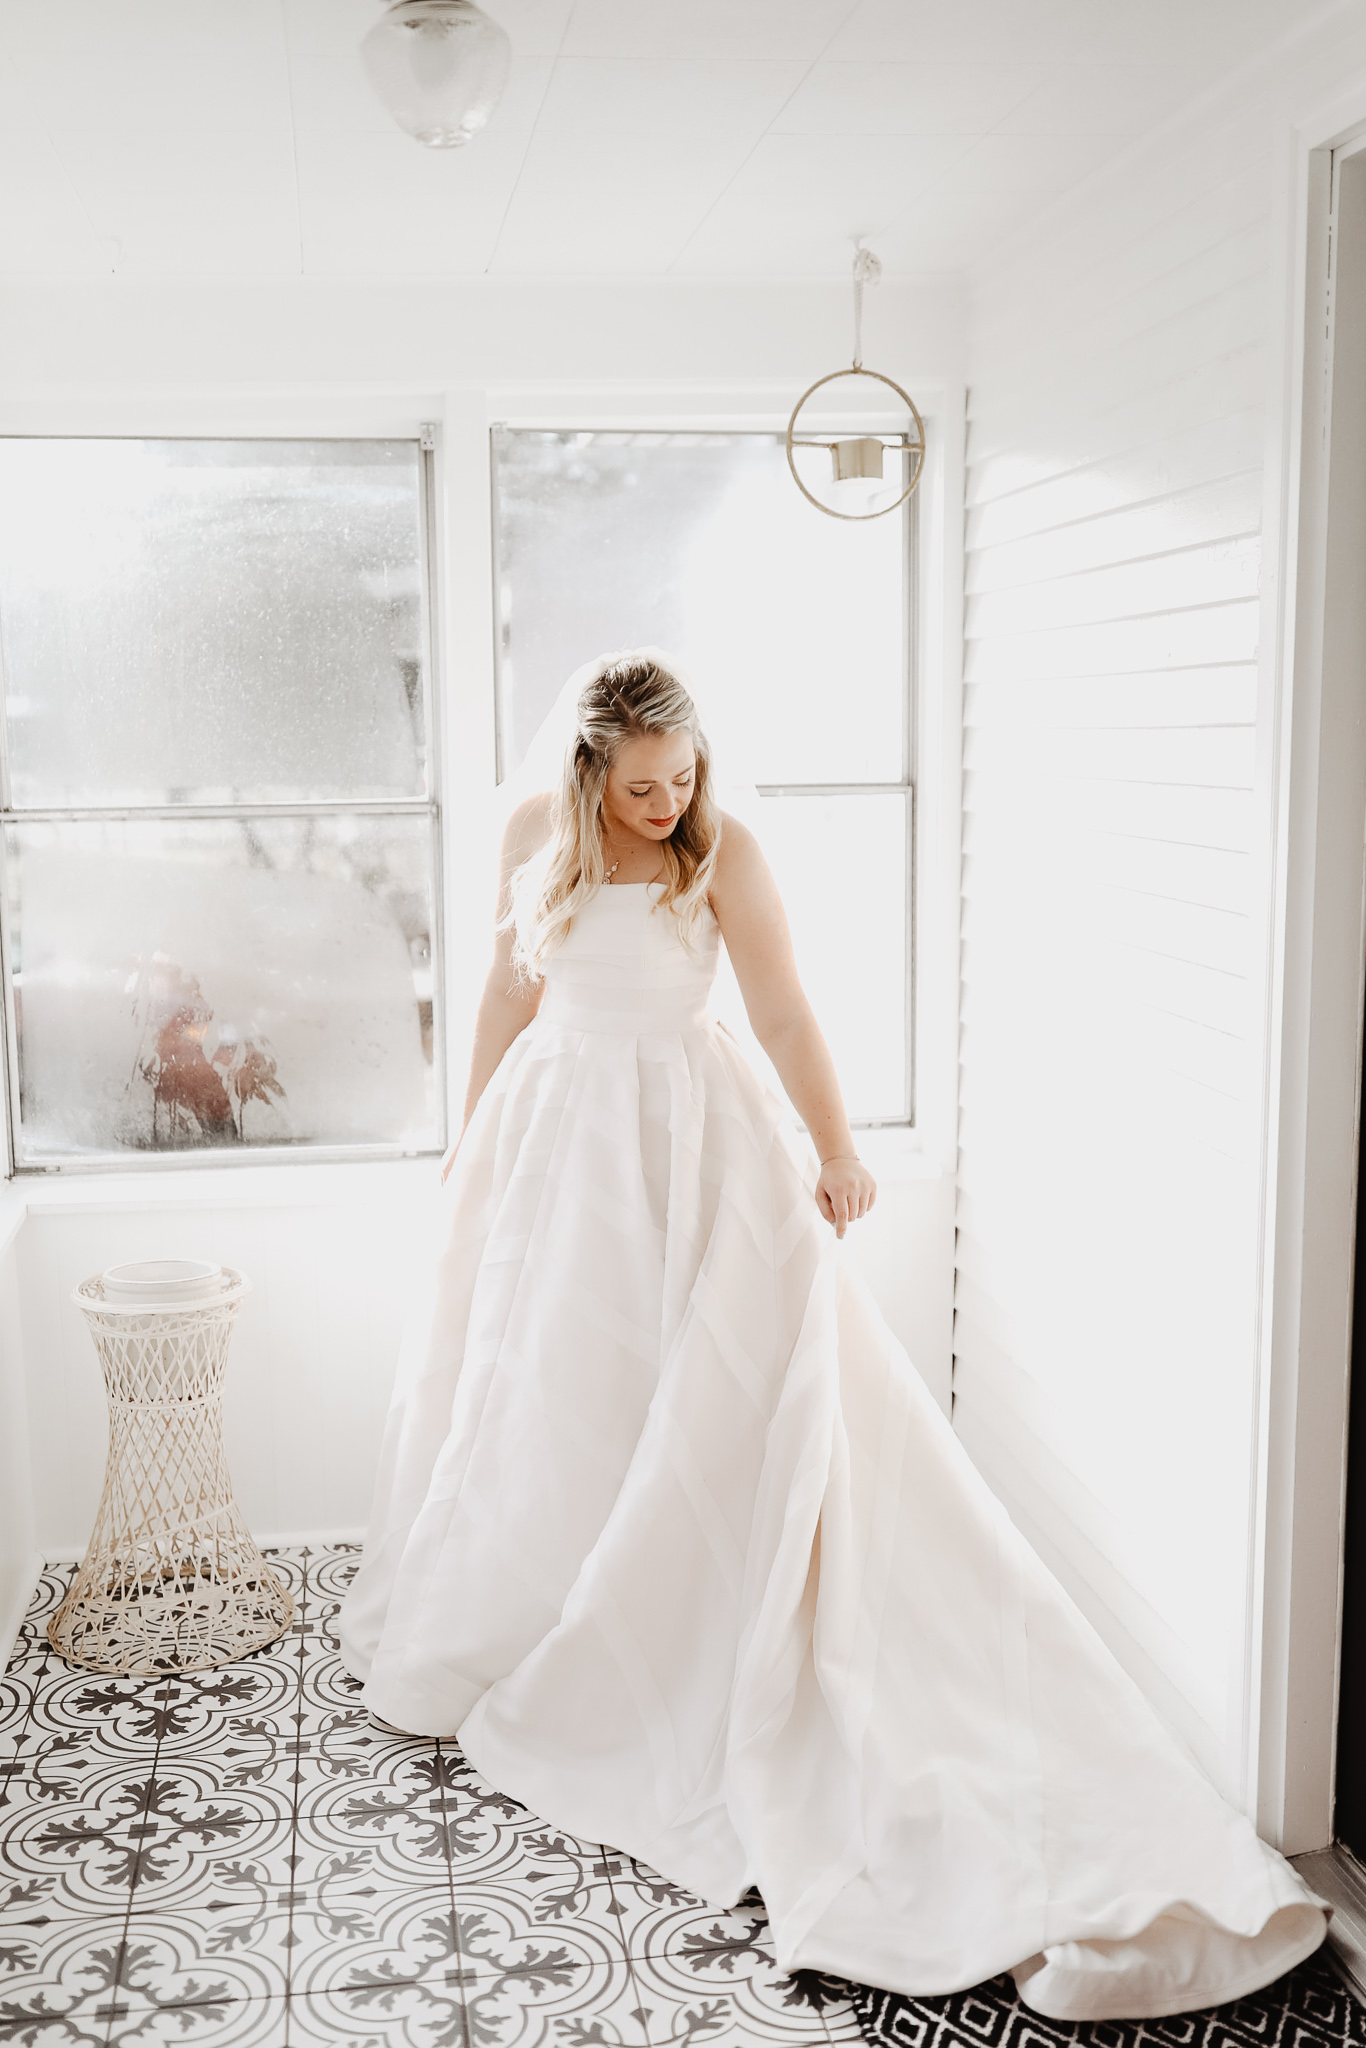 Megan + Jay | Cranberry and Gold Christmas Michigan Wedding | Ohio Wedding + Engagement Photographer | Catherine Milliron Photography